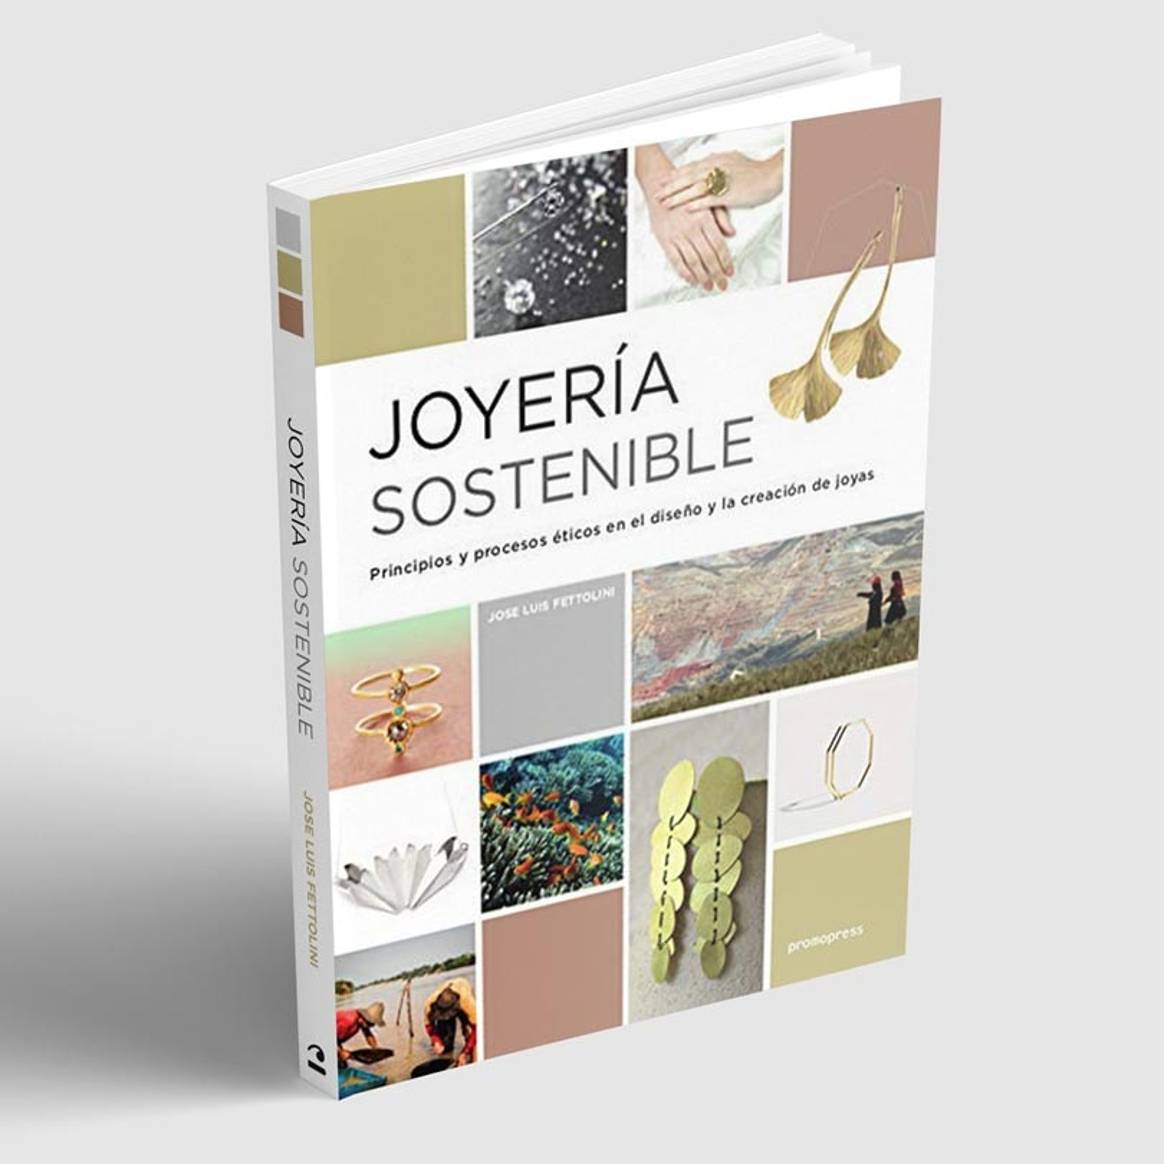 La joyería ética y sostenible de Jose Luis Fettolini